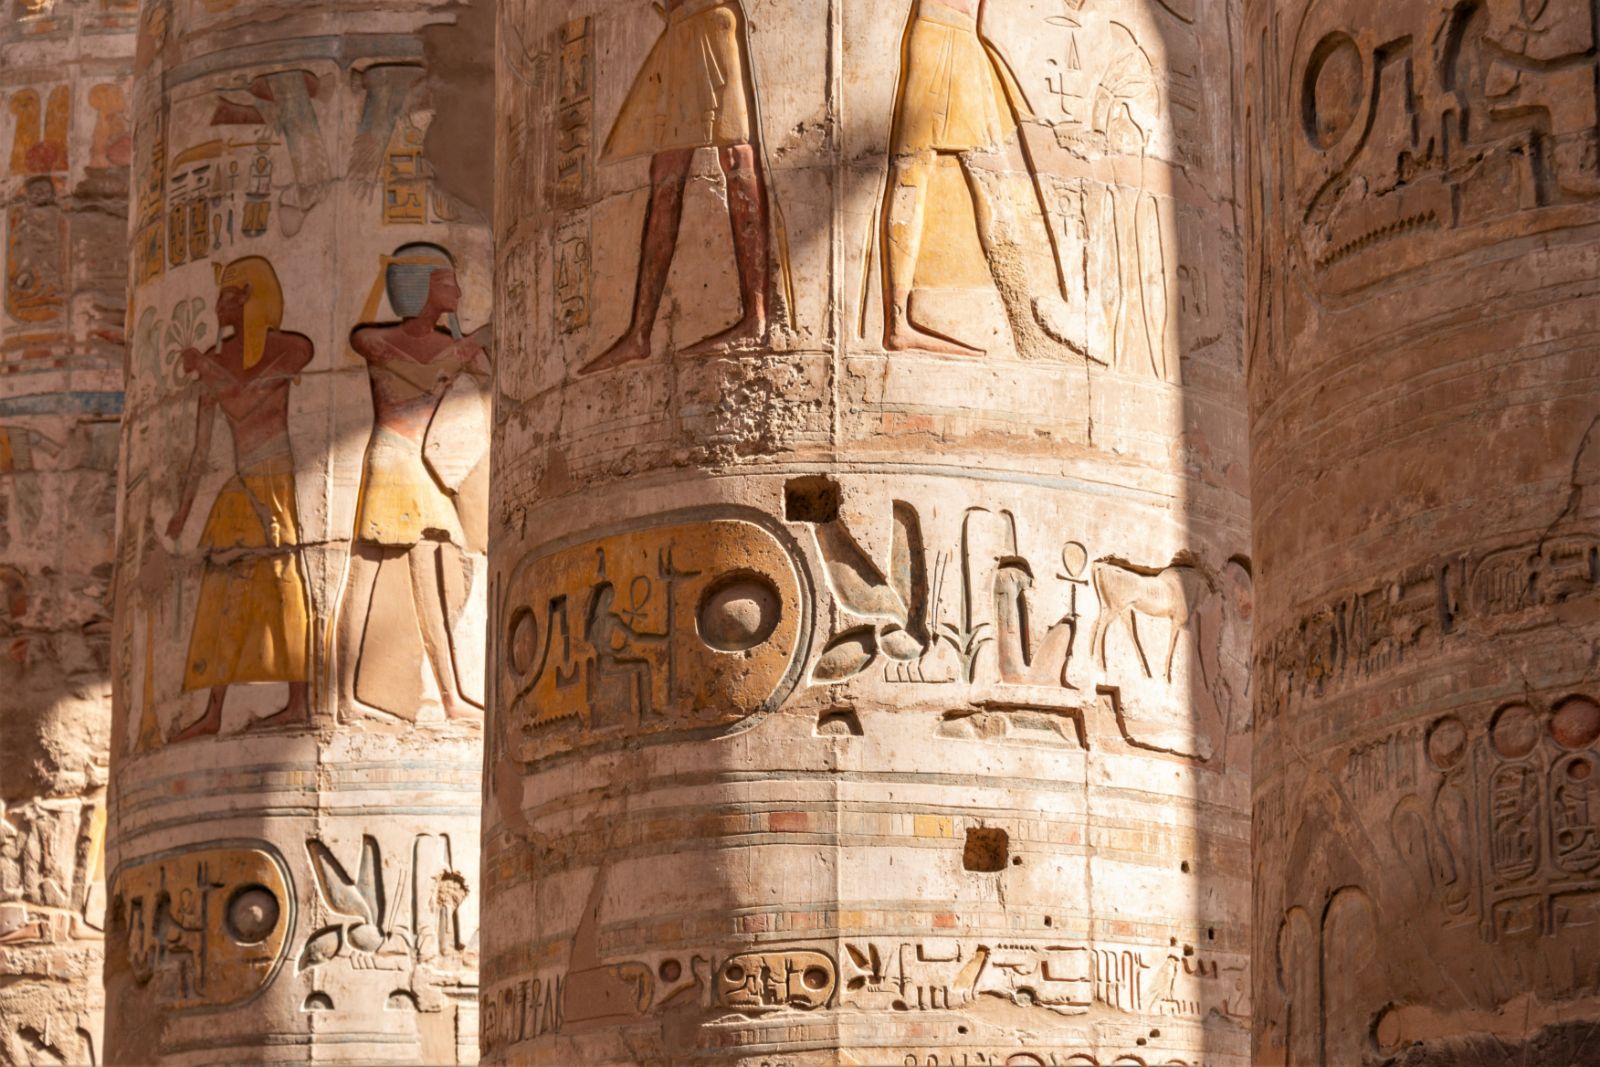 Hieroglyphs on the pillars of Karnak temple in Egypt